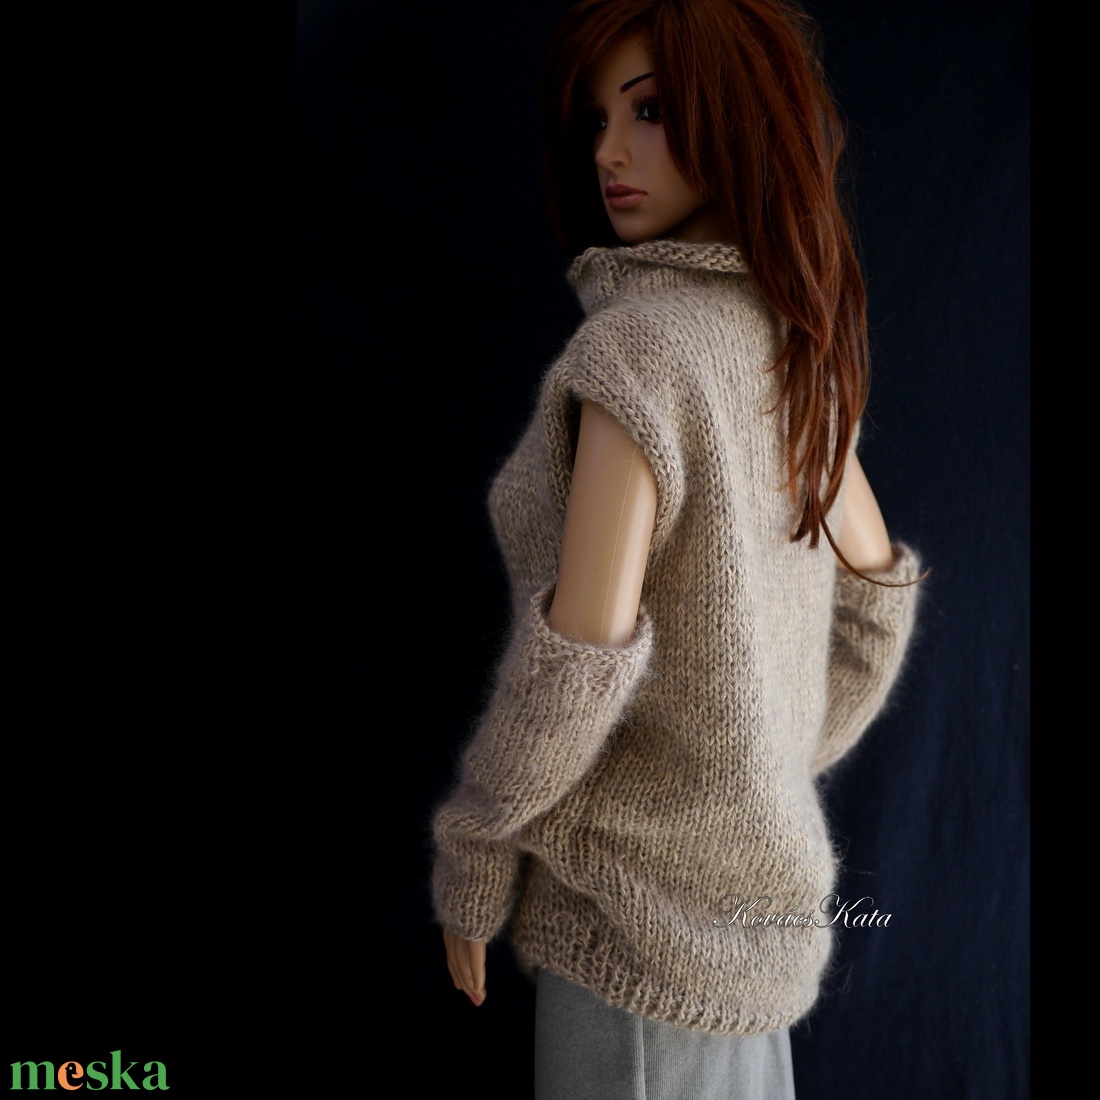 NESSY-SZETT - exkluzív kézzel kötött téli pulóver kesztyűszárral - ruha & divat - női ruha - pulóver & kardigán - Meska.hu